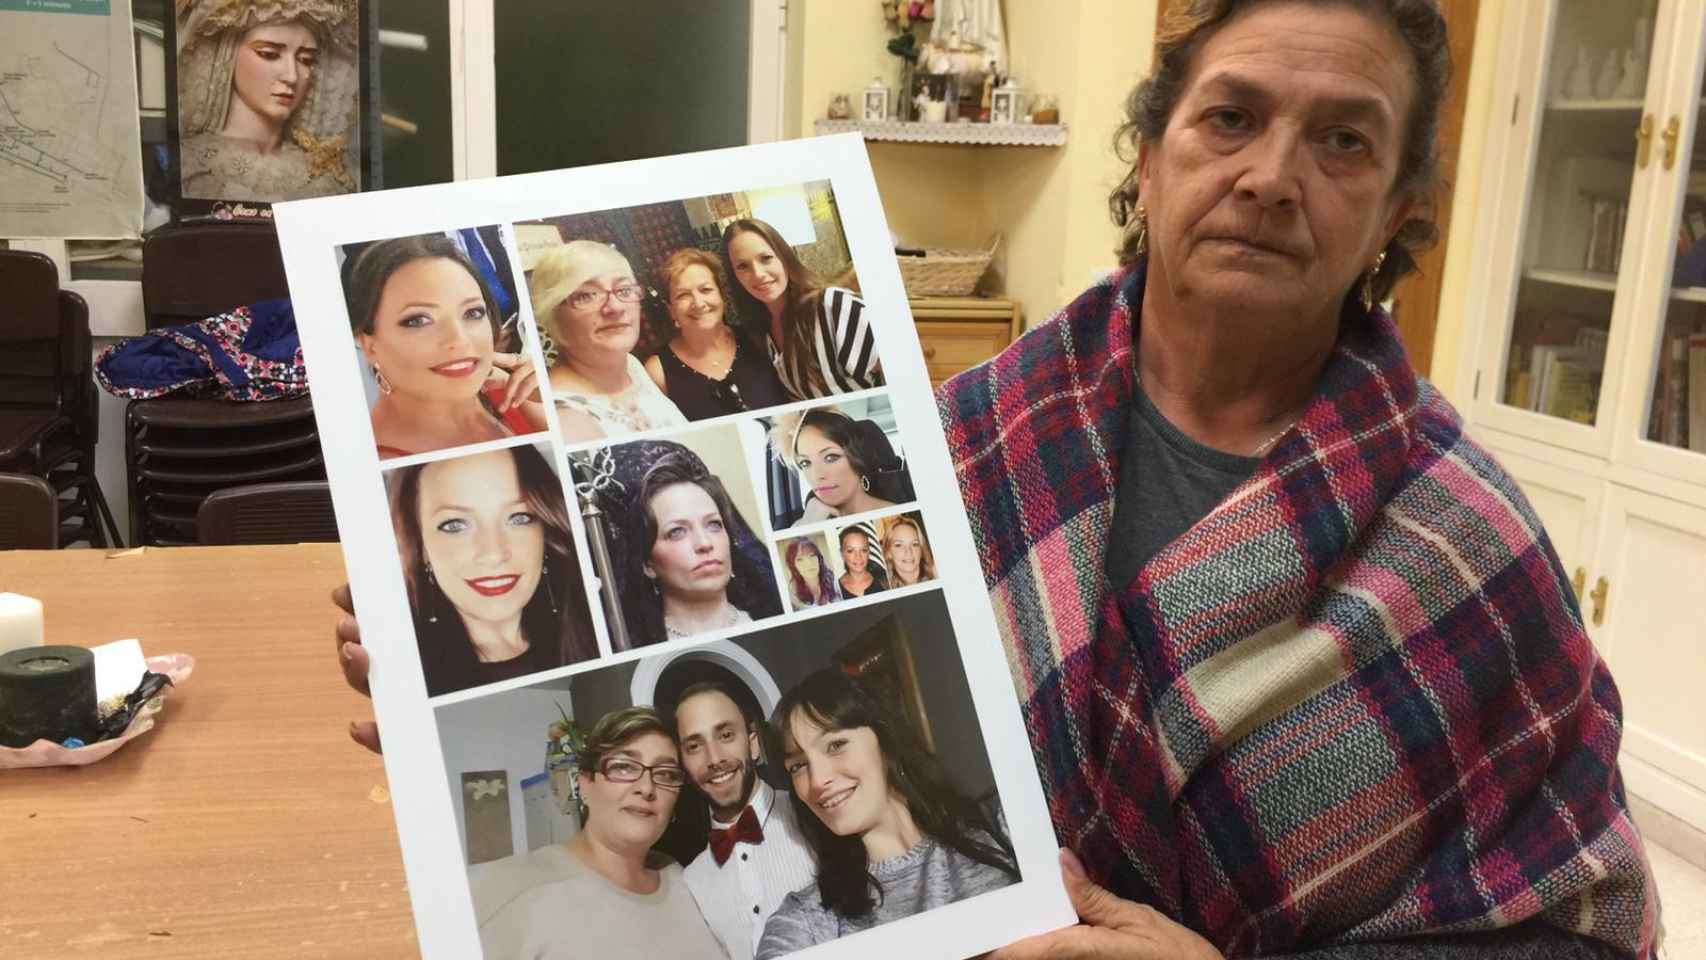 Juana Cortés es la madre de la mujer fallecida. Recibe a EL ESPAÑOL este martes en Cádiz, donde reside. La señora, de 56 años, muestra un collage de fotos con imágenes de su hija junto a sus dos hermanos.